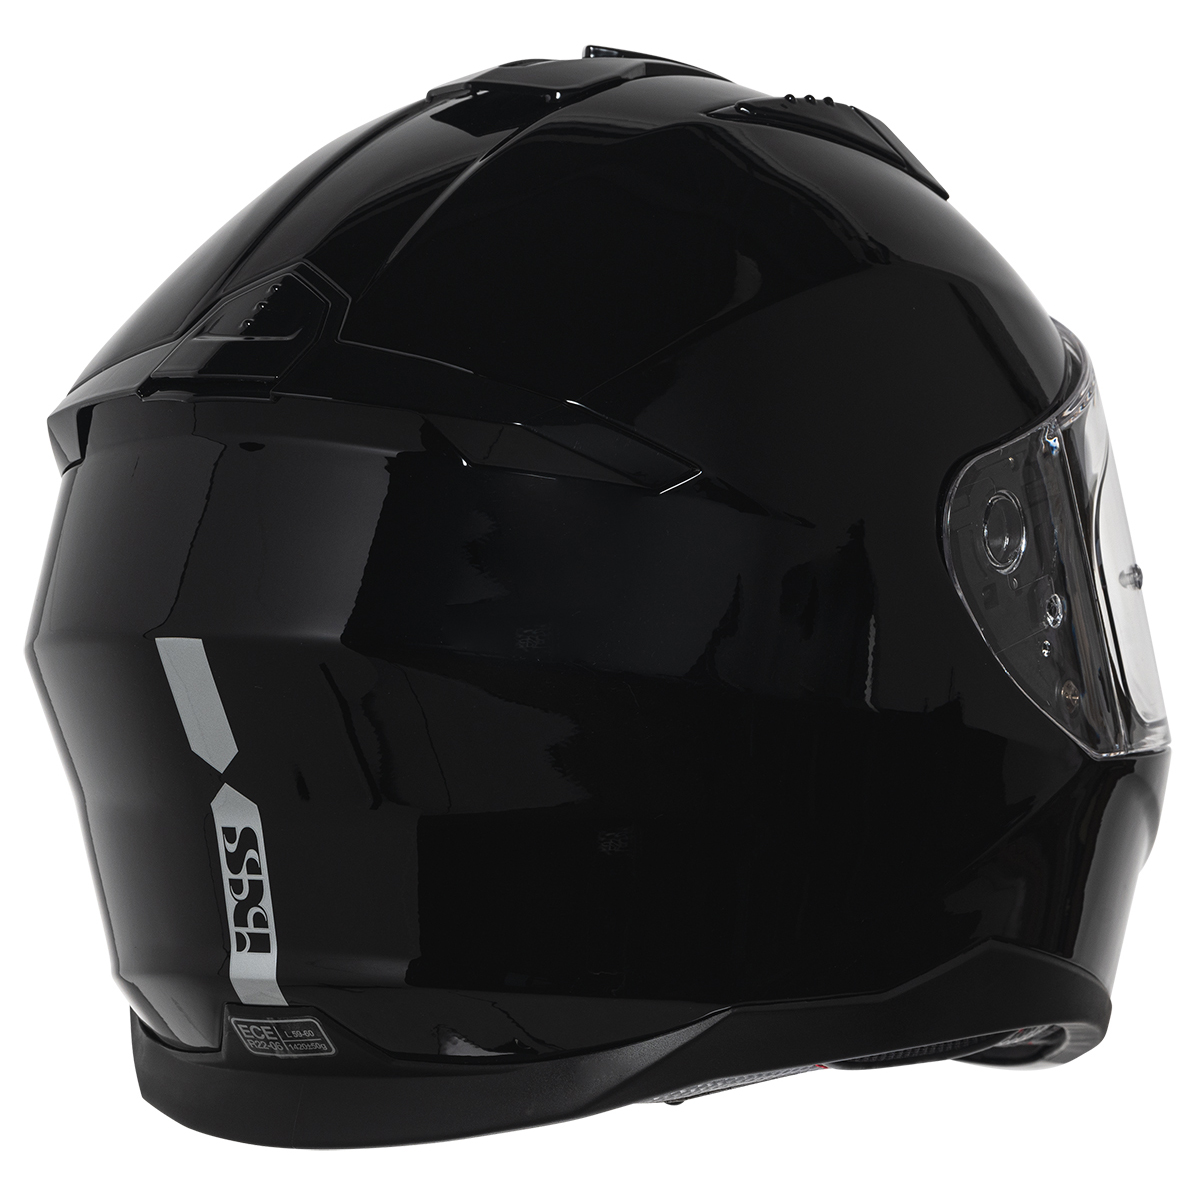 iXS Helm iXS217 1.0, schwarz